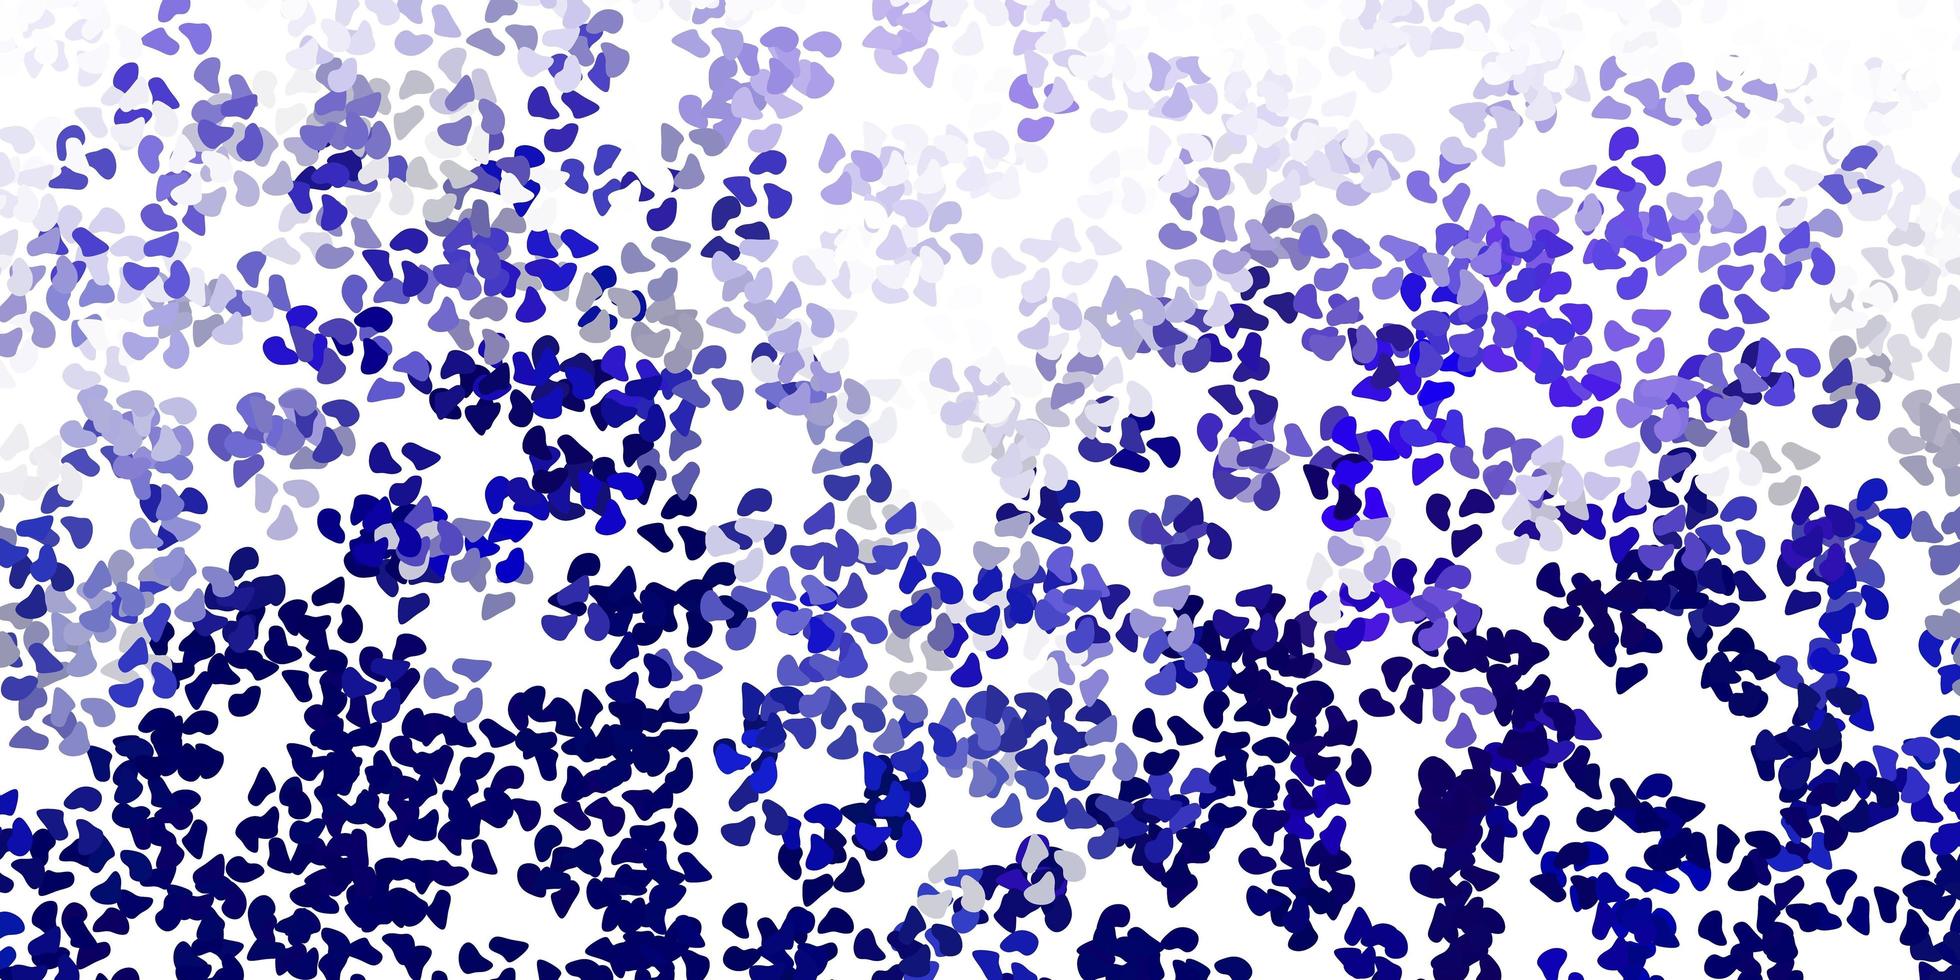 ljusrosa, blå vektorbakgrund med kaotiska former. vektor